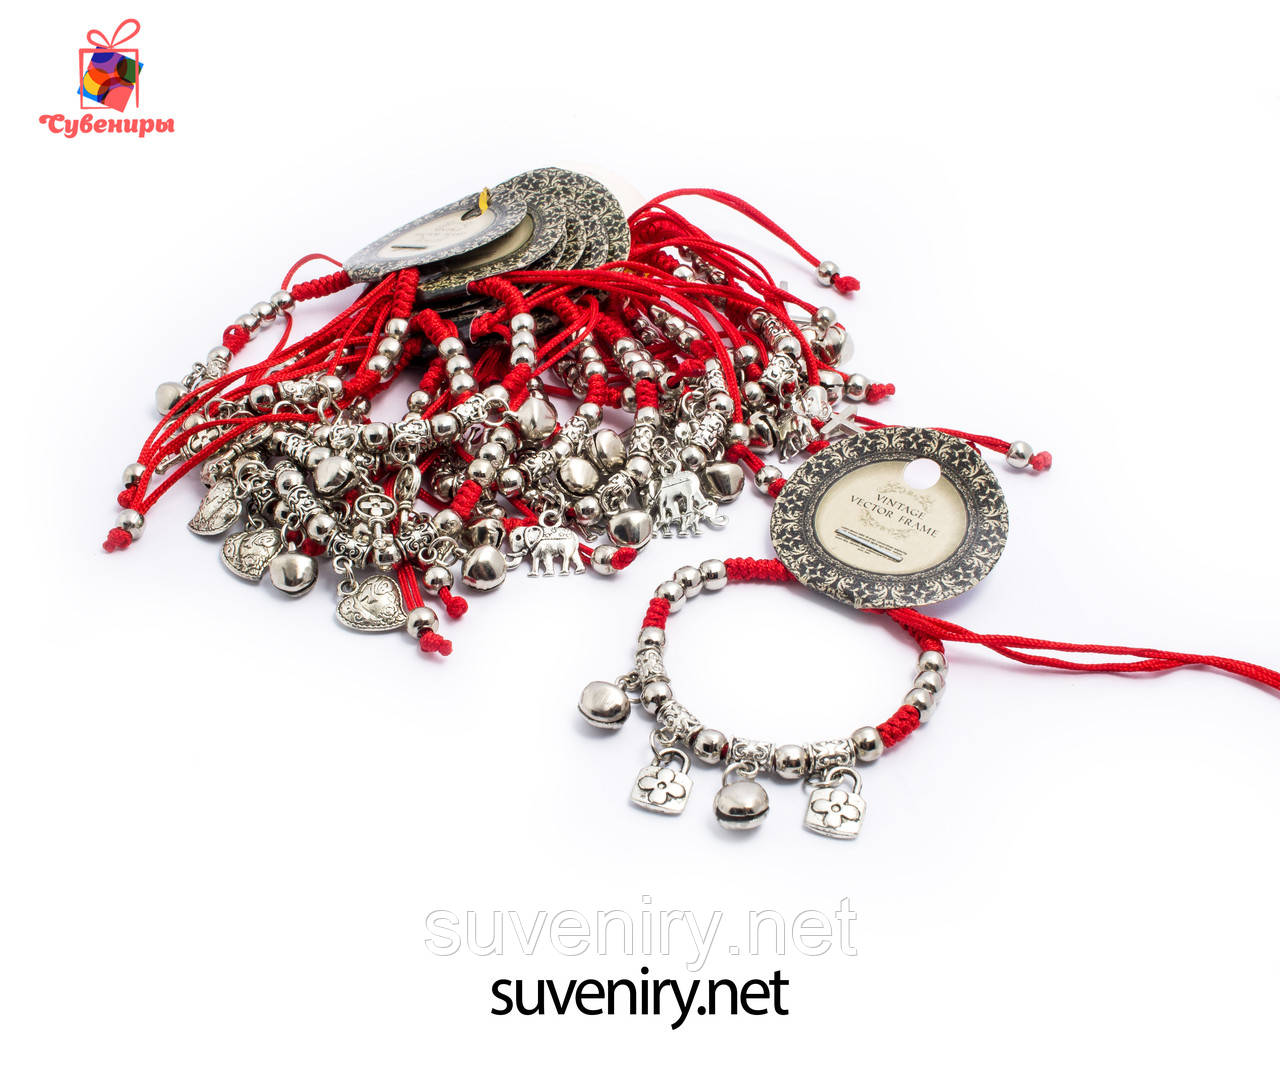 Сучасно-модний браслет червона нитка з різними кулонами